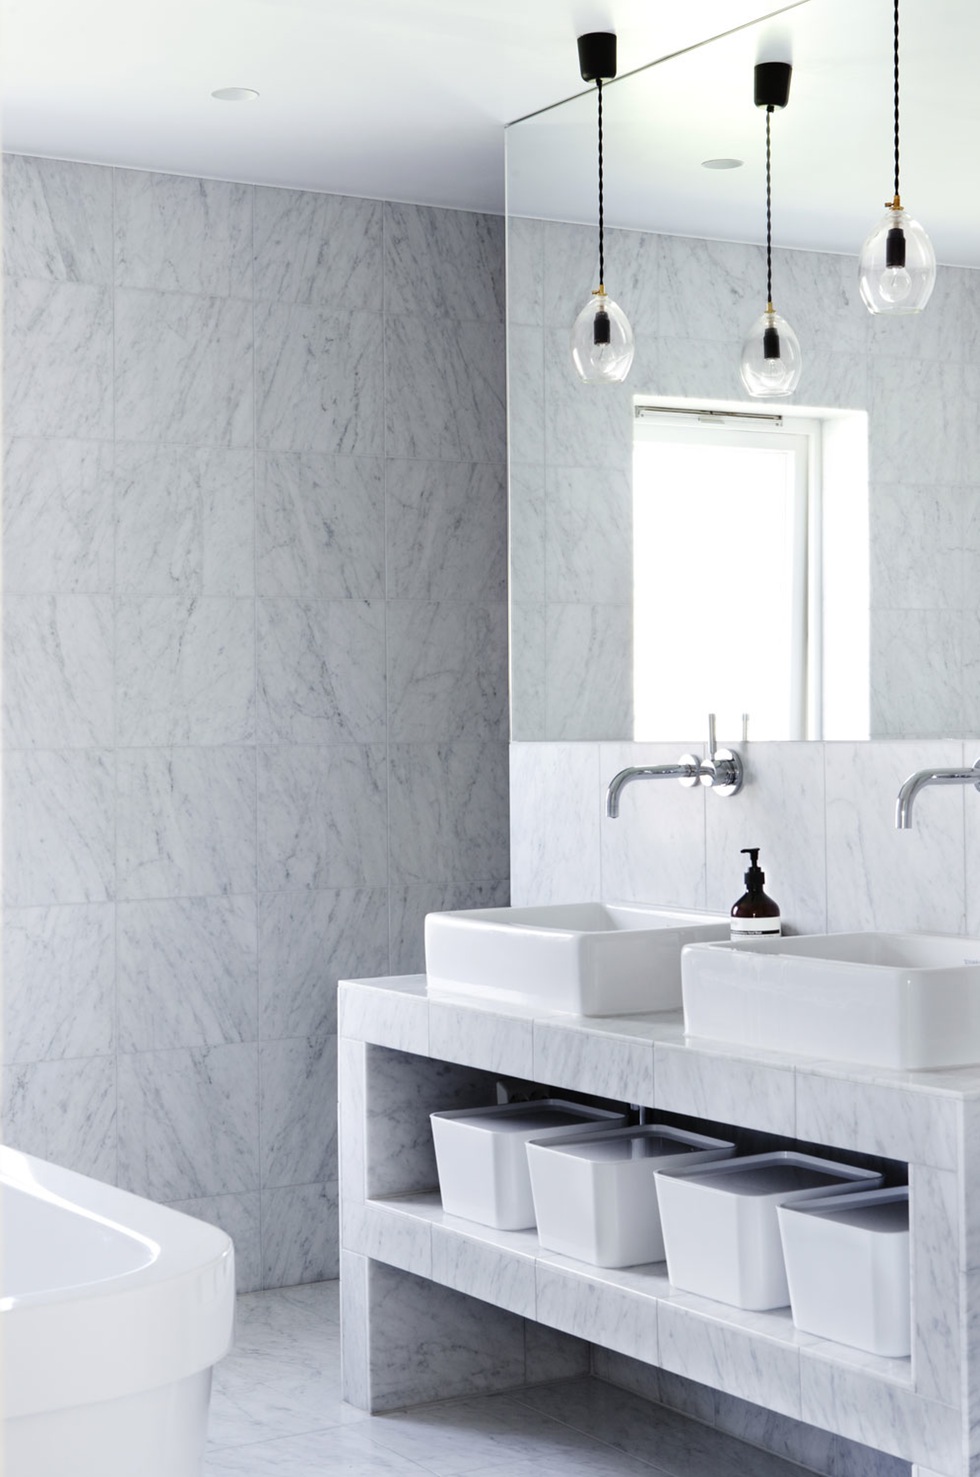 Ein hell gefliestes Bad mit einem eleganten Waschtisch aus Stein, vor den Spiegeln hängen zwei Deckenleuchten.